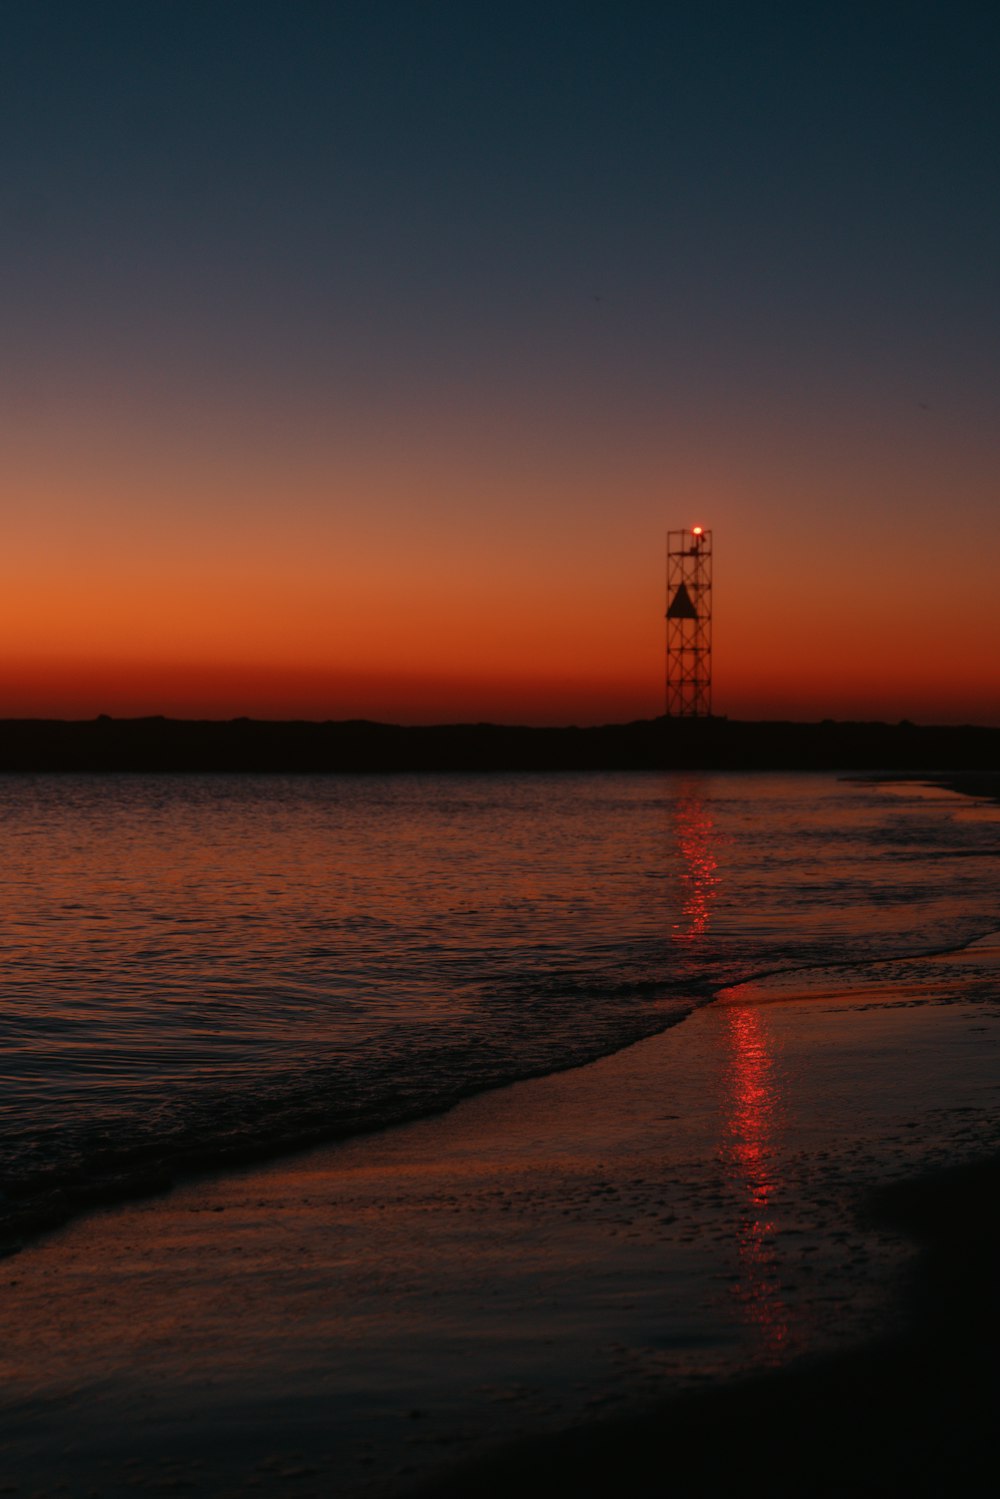 Le soleil se couche sur l’océan avec un phare au loin